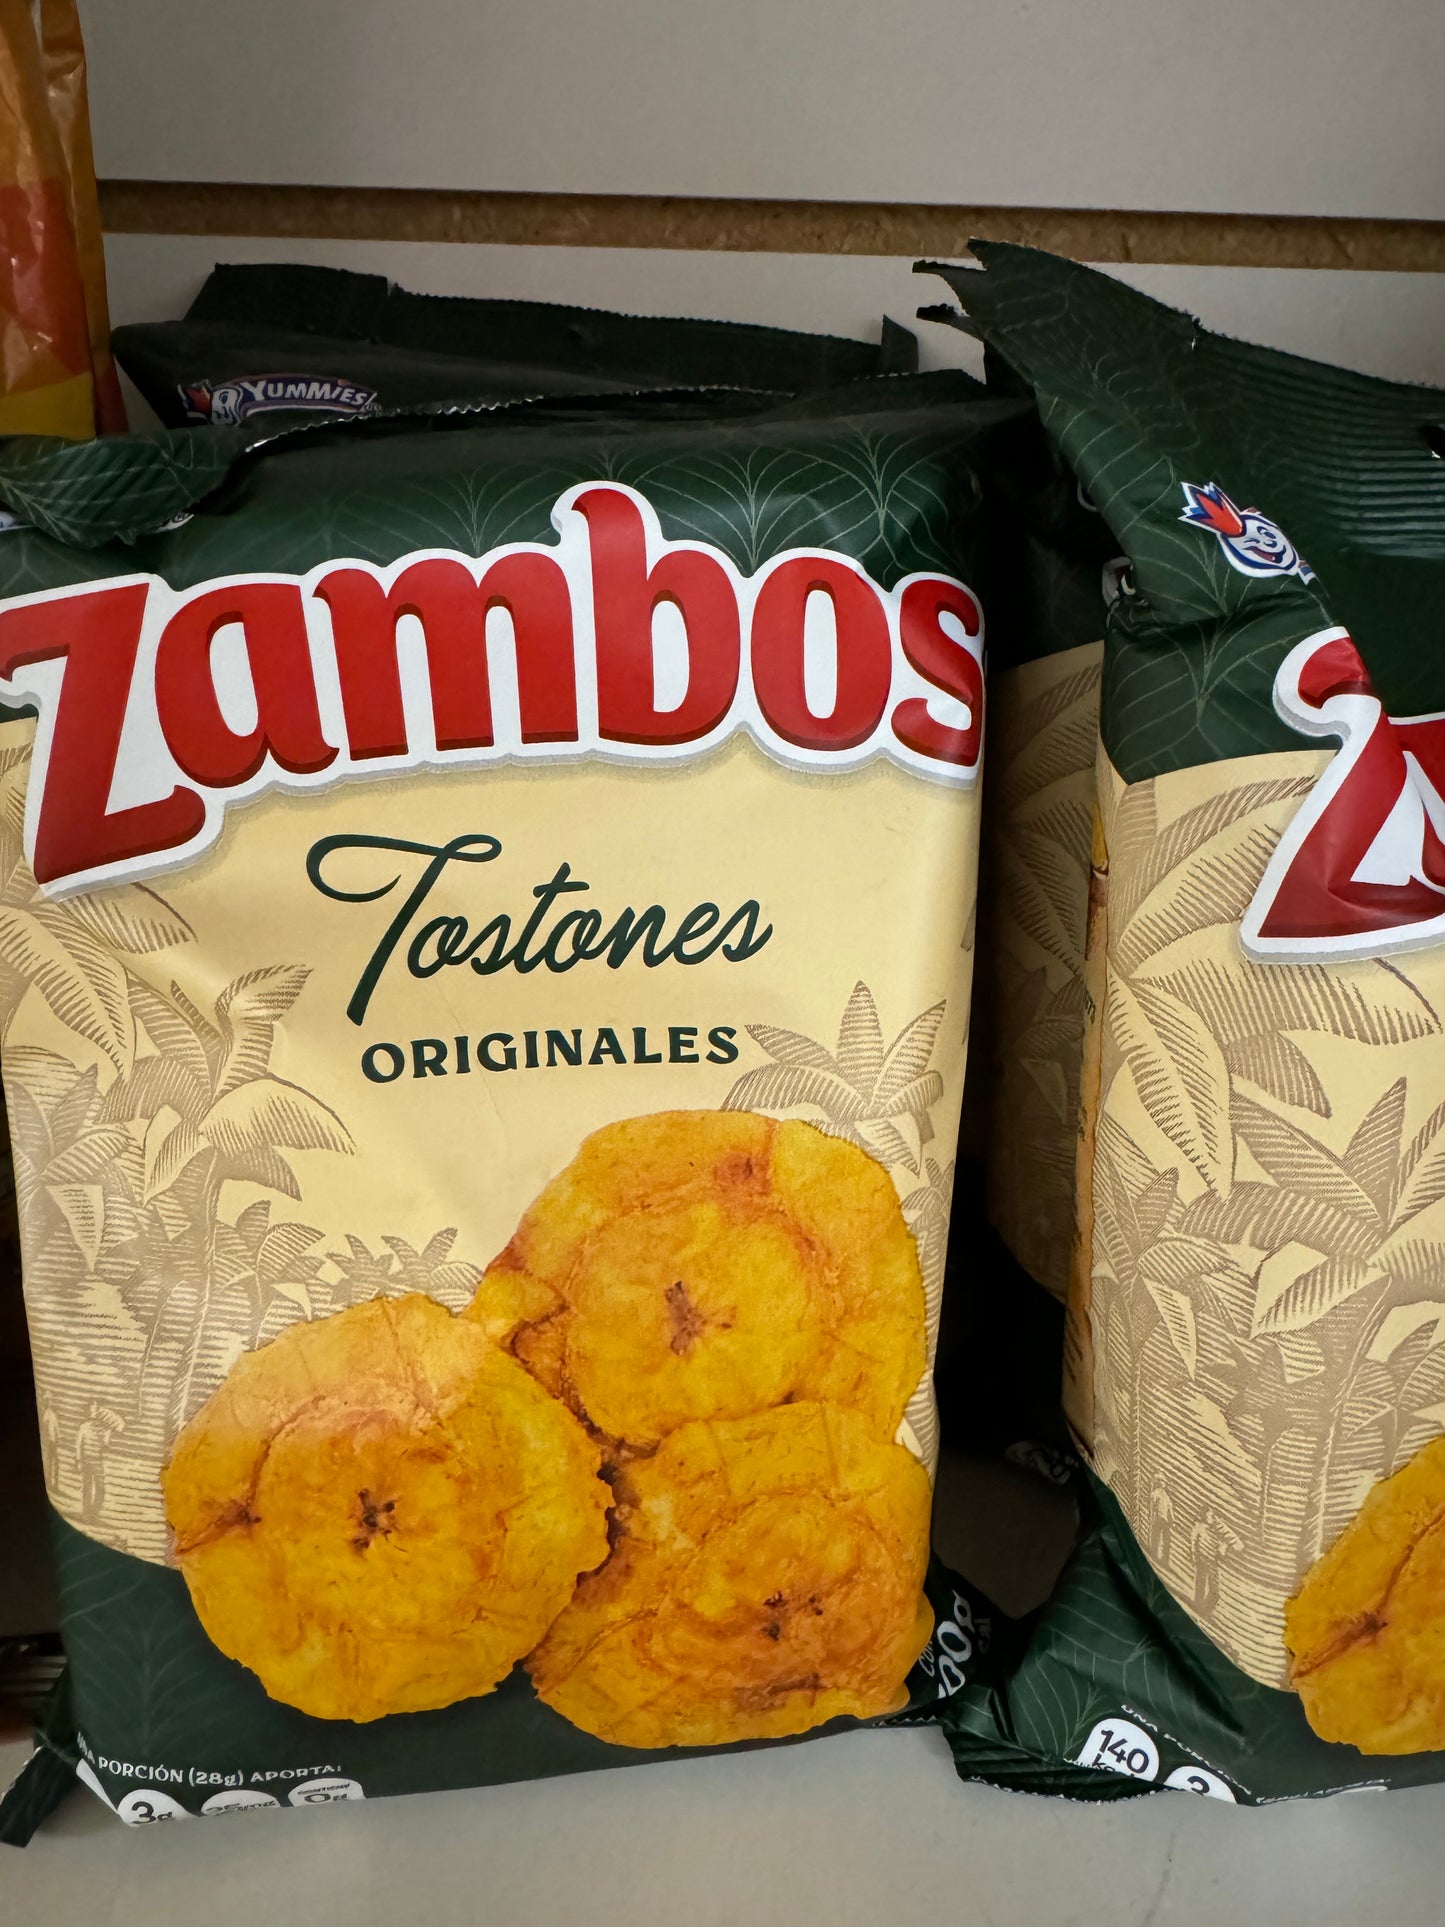 Zambos tostones